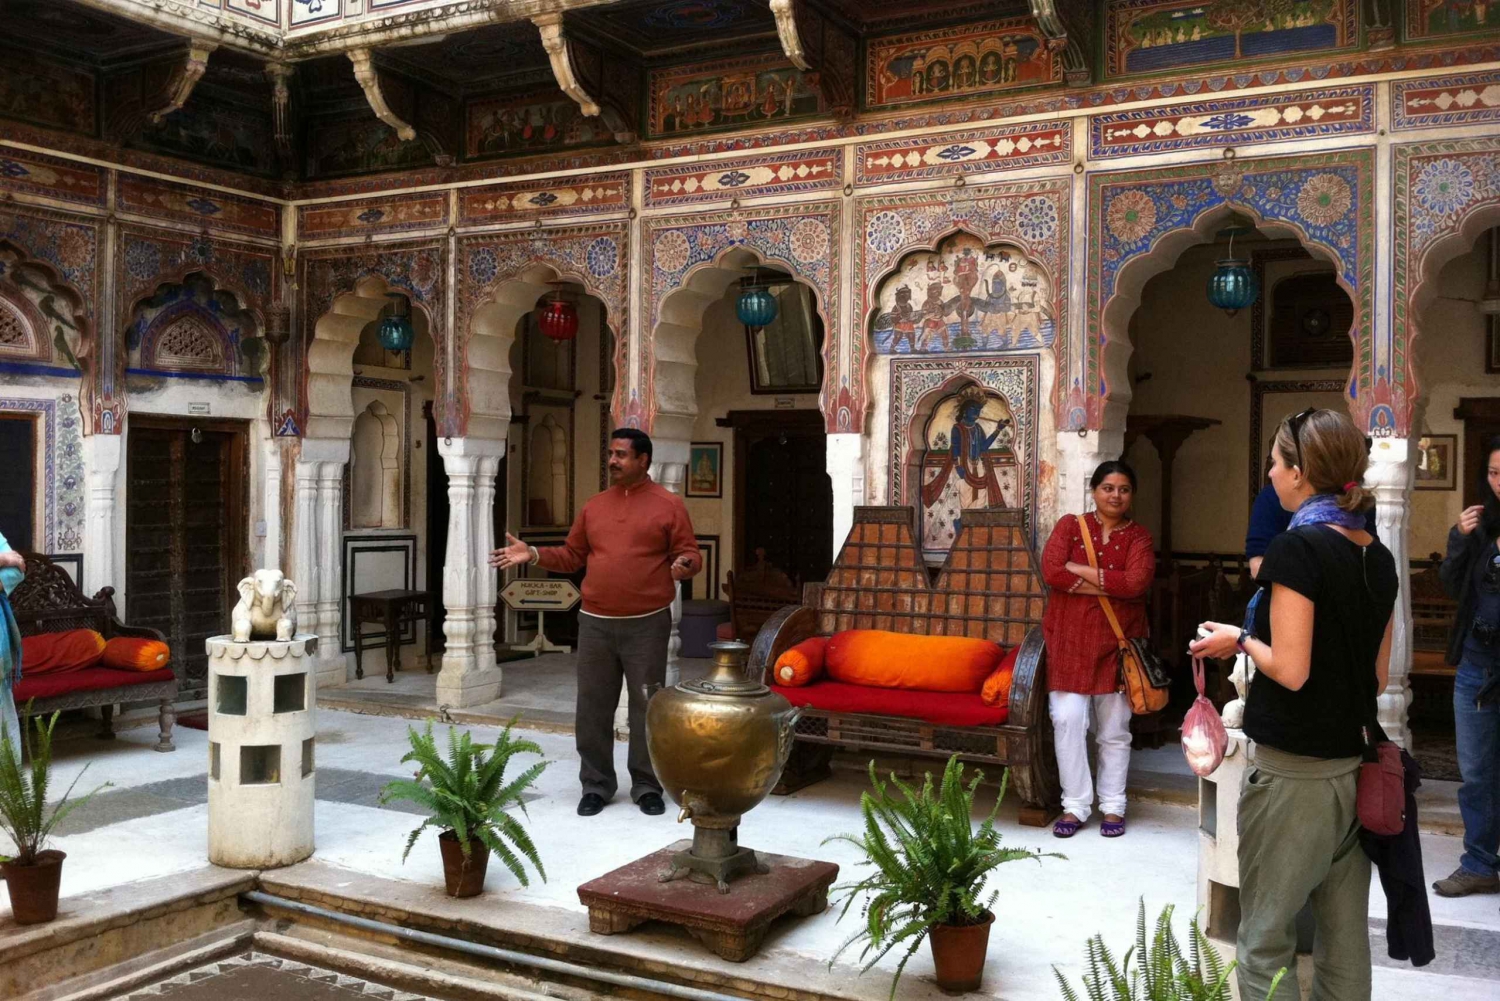 From Jaipur: Same Day Shekhawati Tour